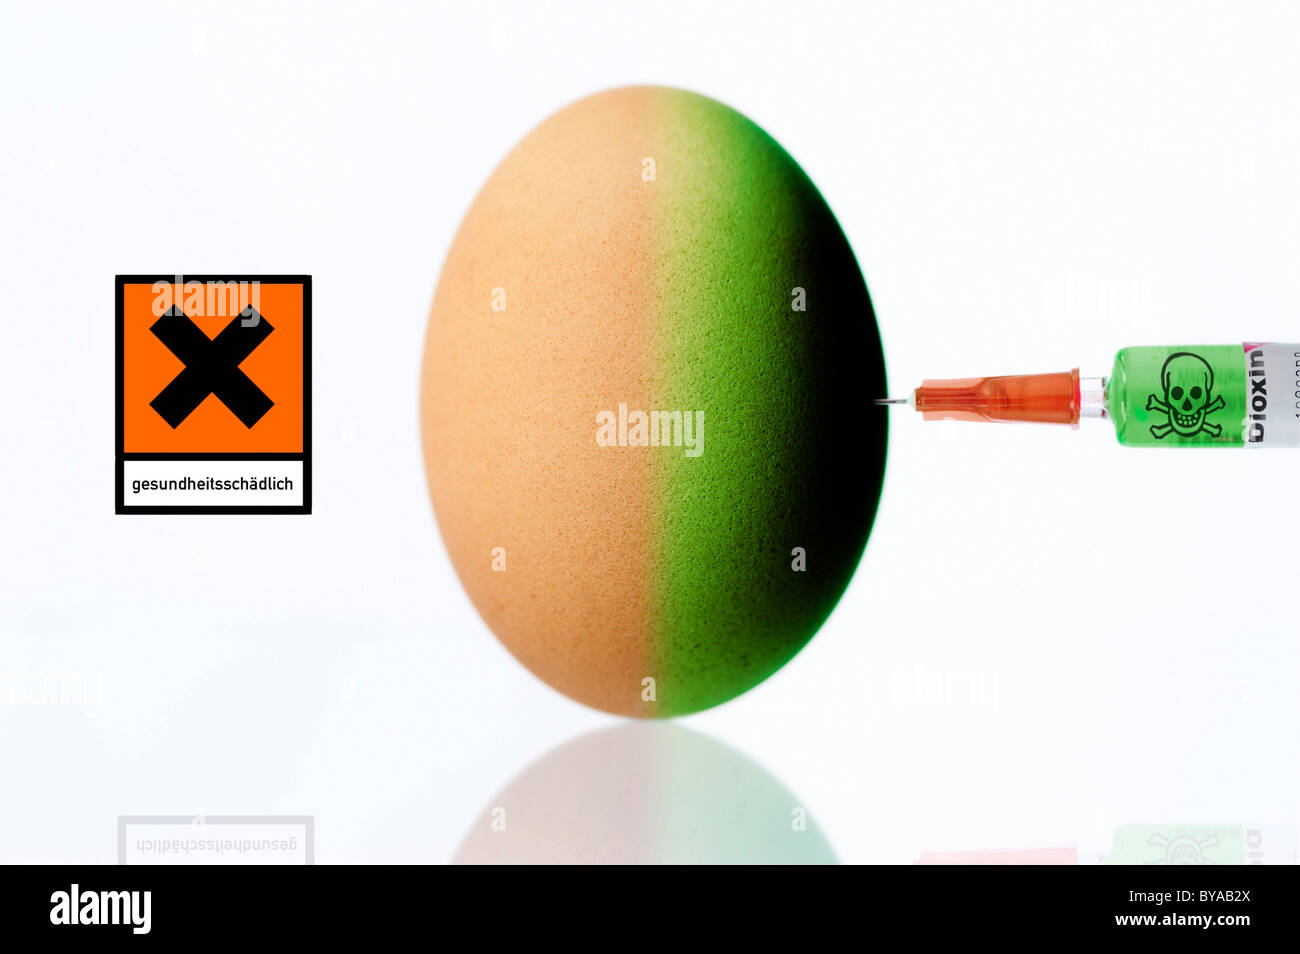 Un uovo di gallina che viene iniettata con la diossina in una siringa e un avvertimento per la salute segno, immagine simbolica per la contaminazione da diossina nei polli Foto Stock